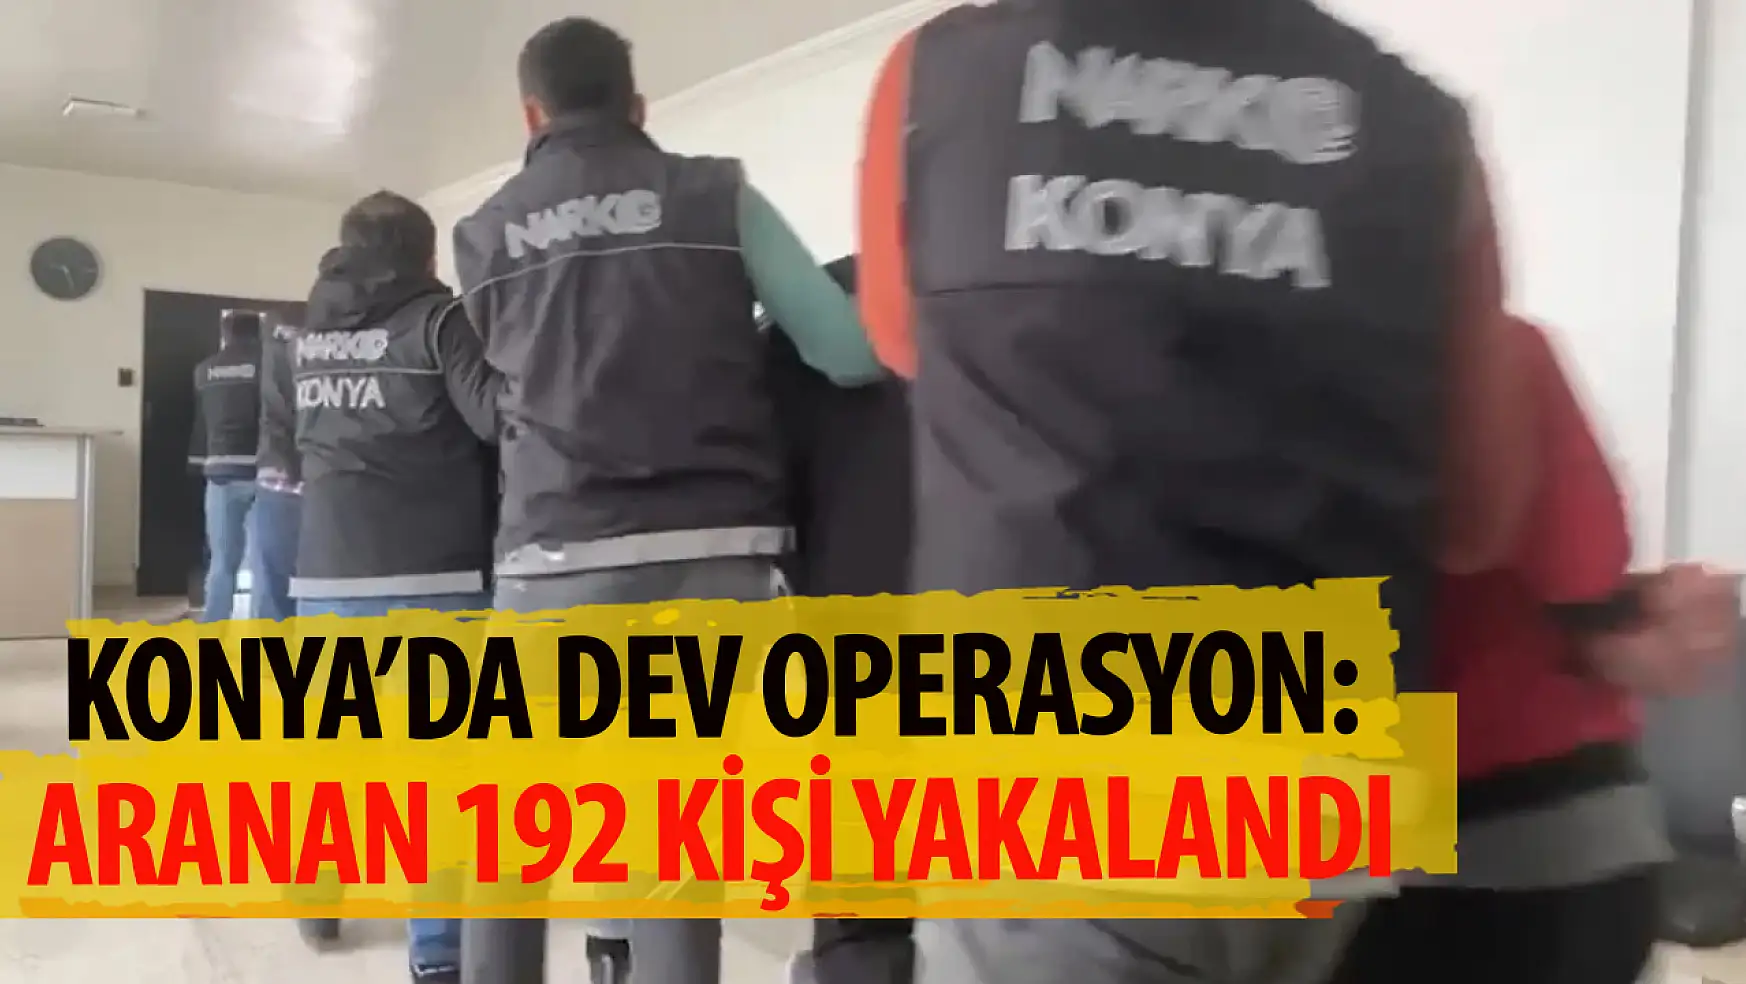 Konya'da dev operasyon! Aranan 192 kişi yakalandı